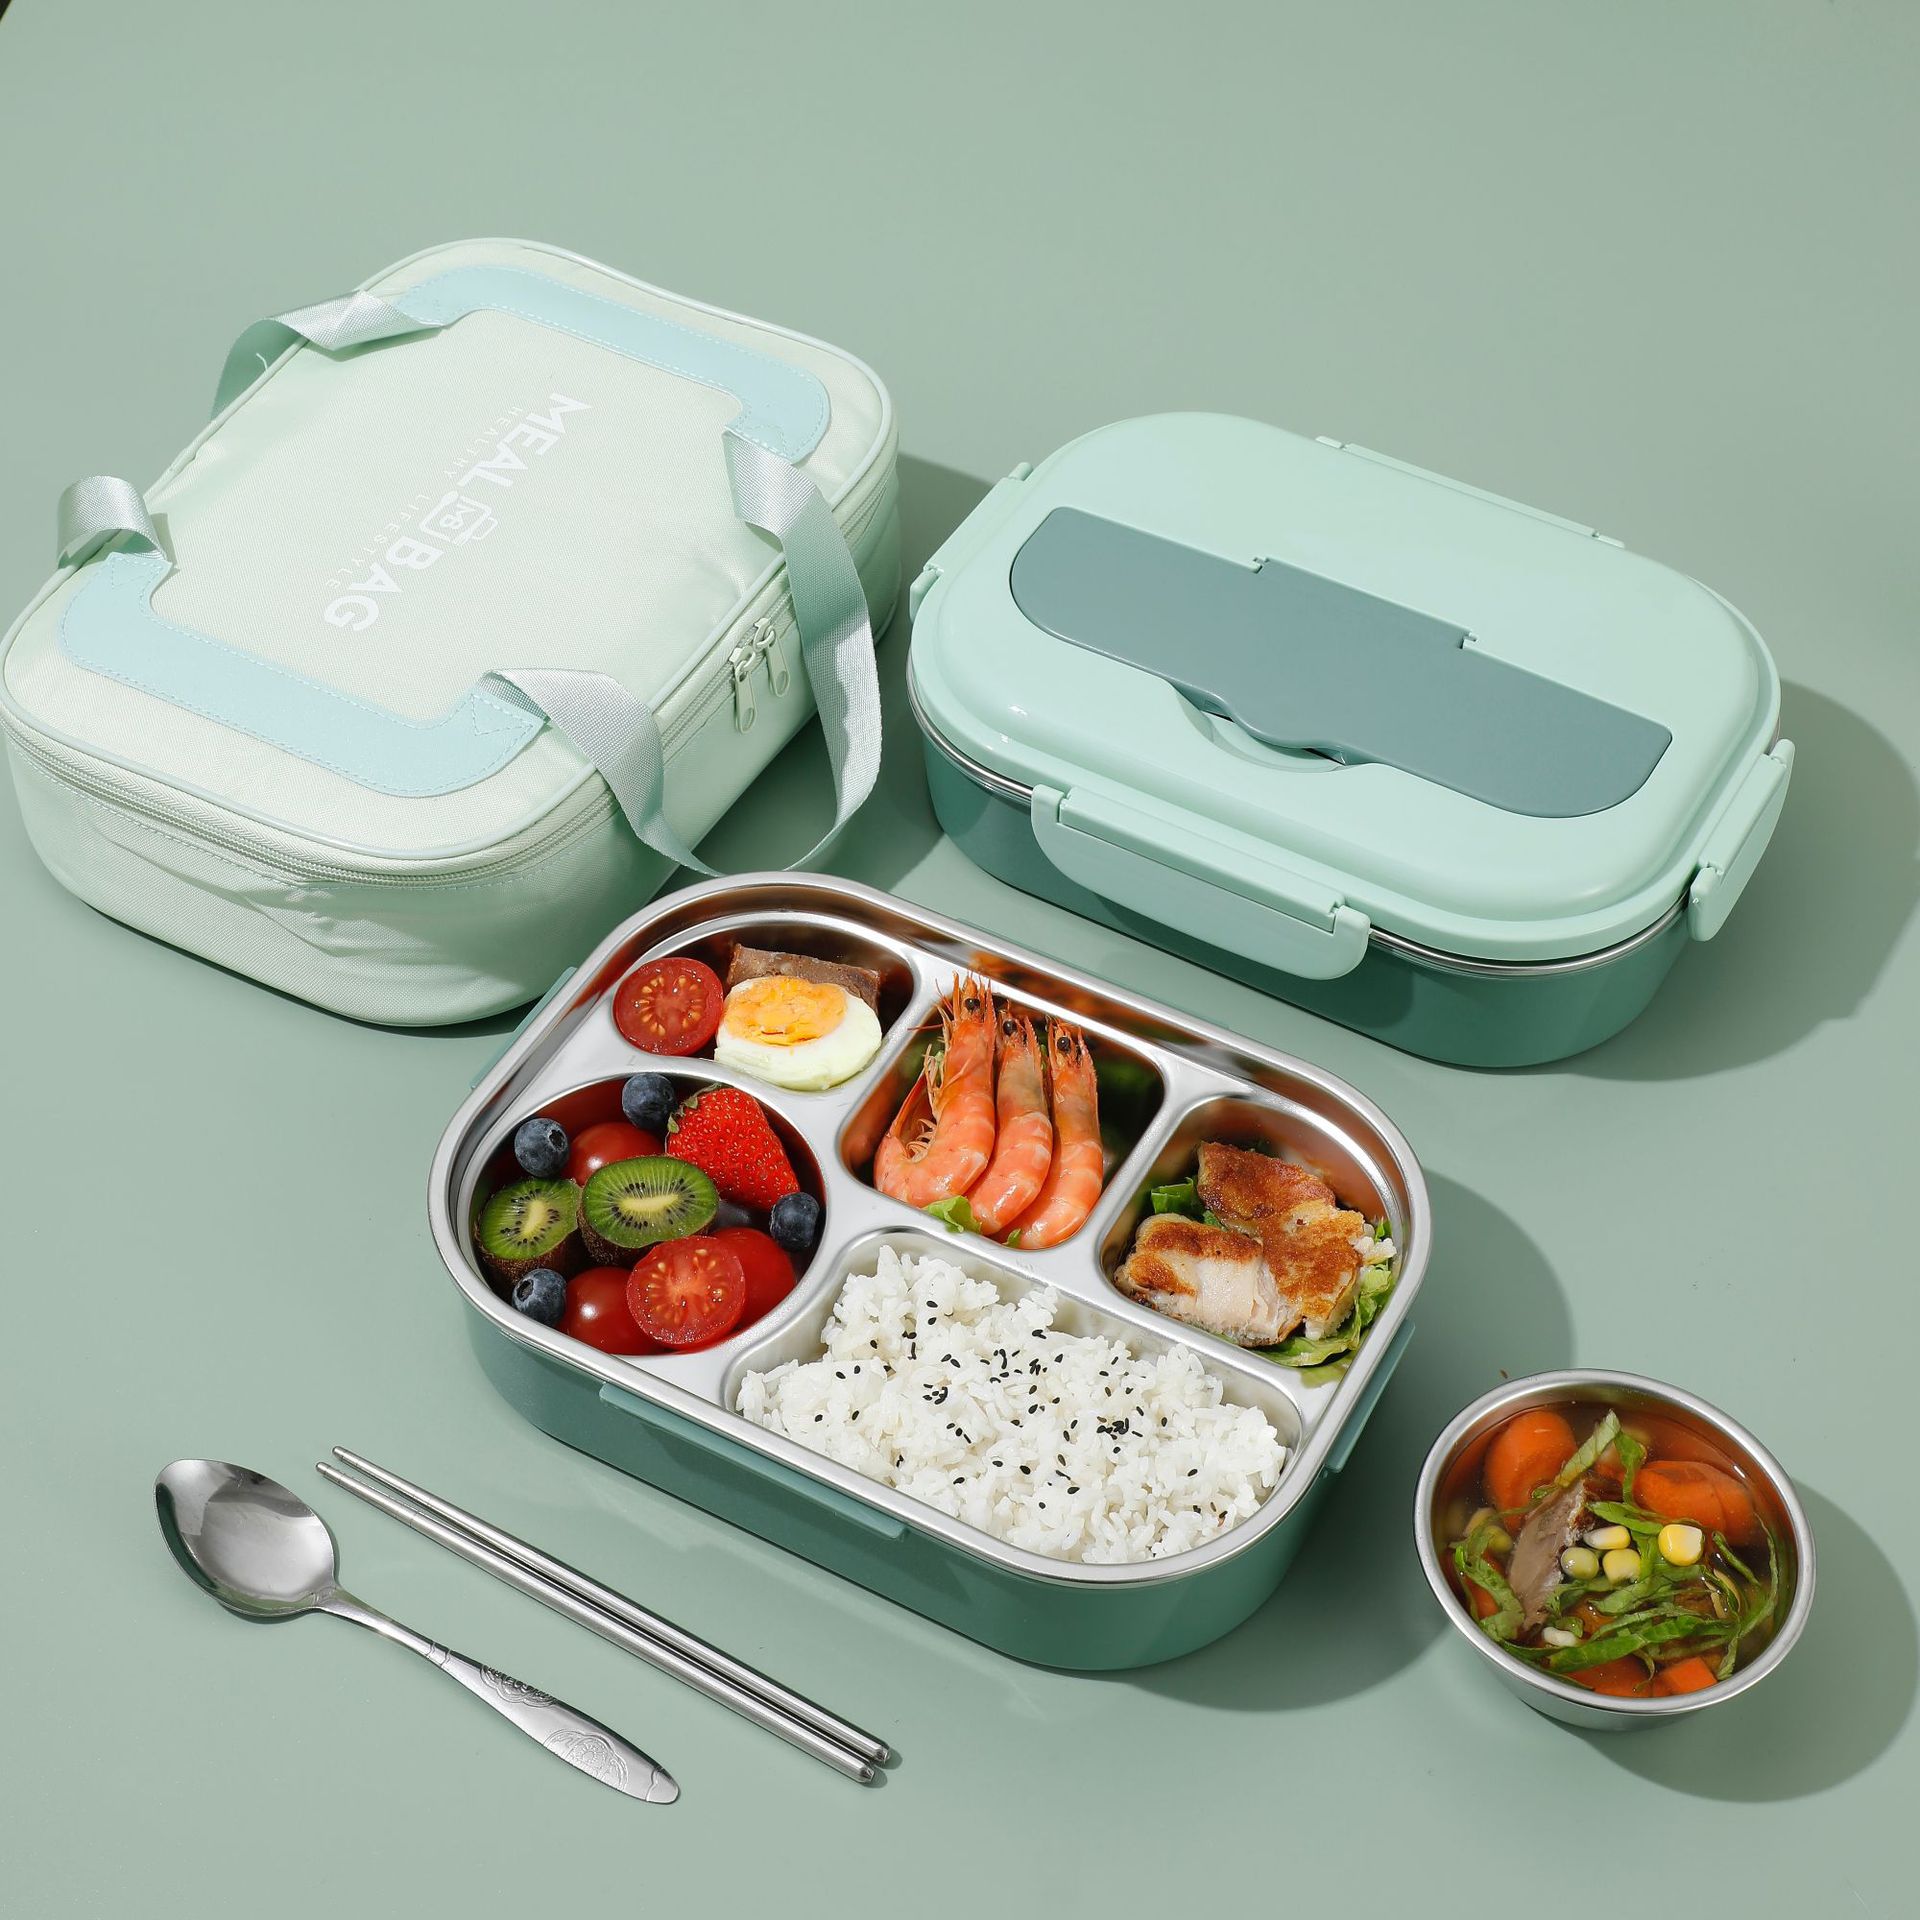 保溫便當盒 兒童飯盒保溫便當盒微波爐學生簡約日式風餐盒長方形塑料飯盒-快速出貨